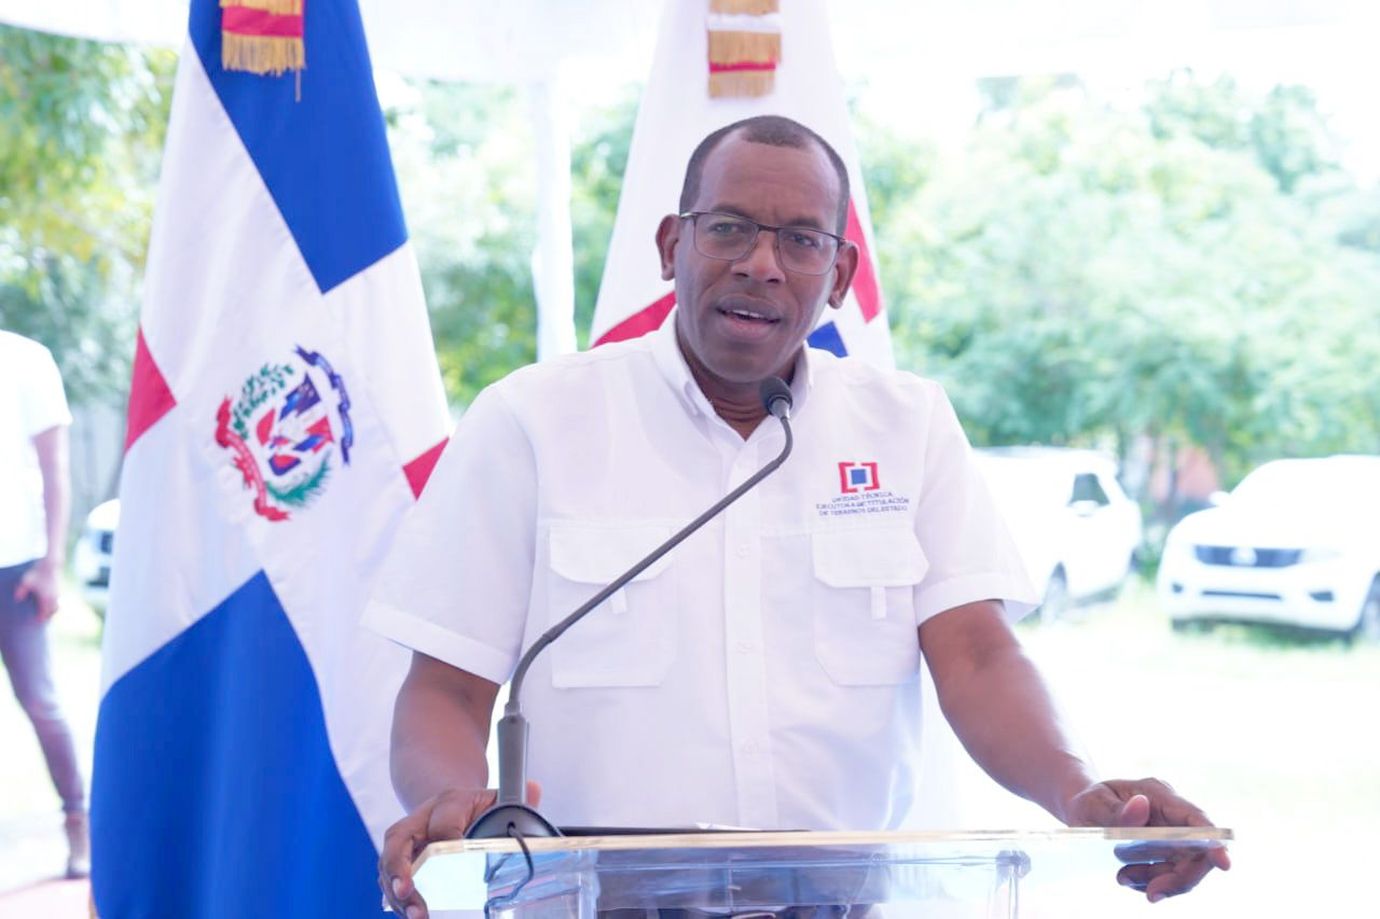 REPÚBLICA DOMINICANA: Gobierno inicia proceso de titulación para entregar más de 3,000 títulos de propiedad en Neiba